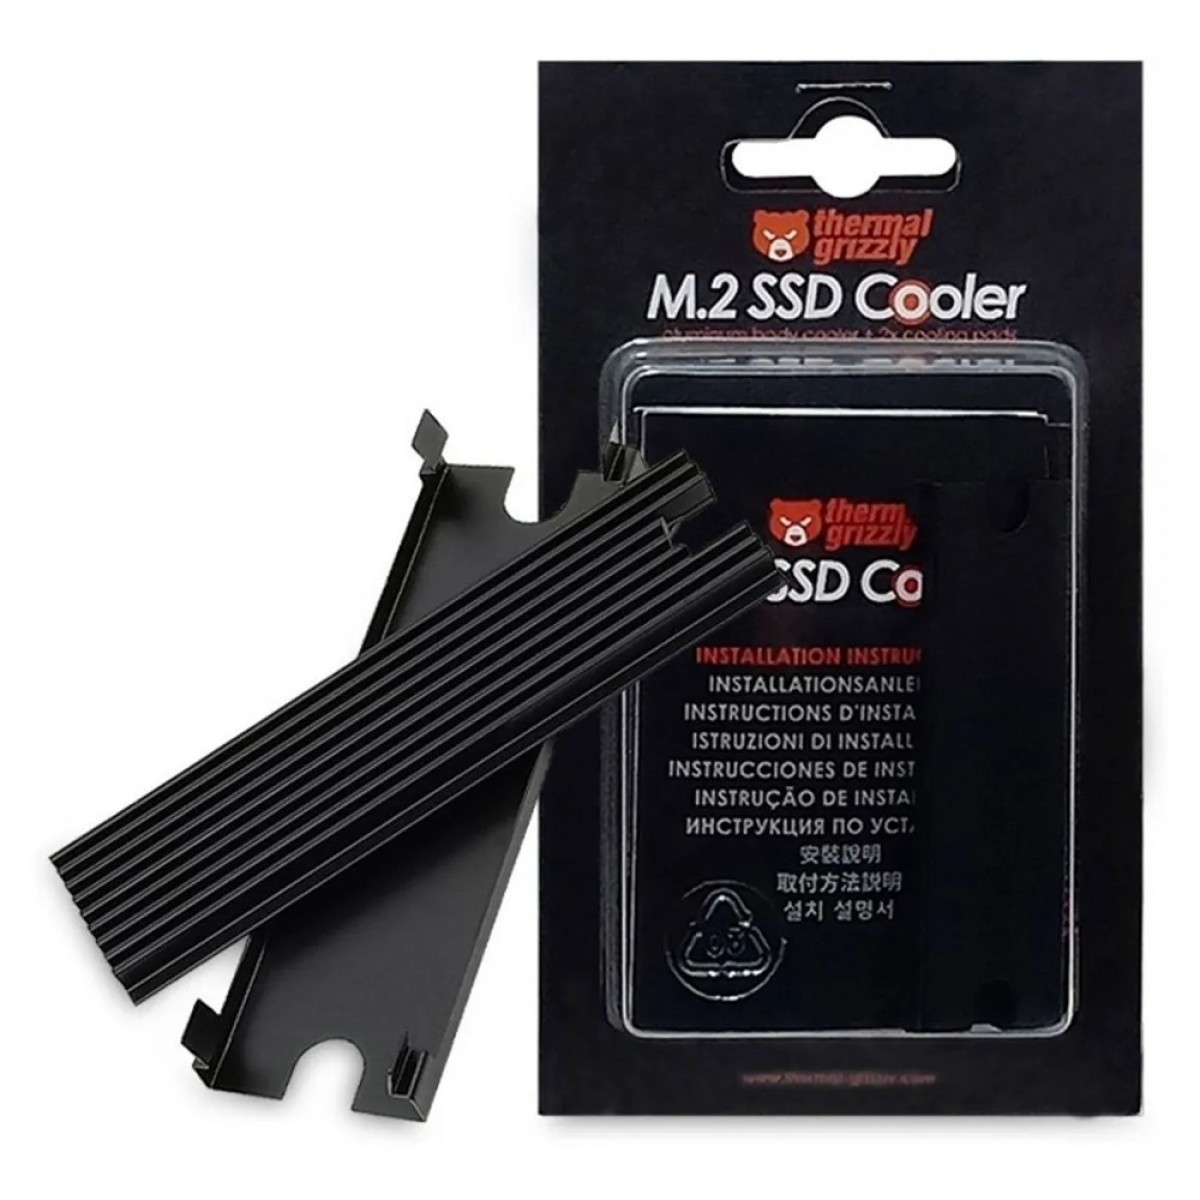 Dissipador de Calor Thermal Grizzly M.2 SSD Cooler, Minus Pad 8, TG-M2SSD-ABR